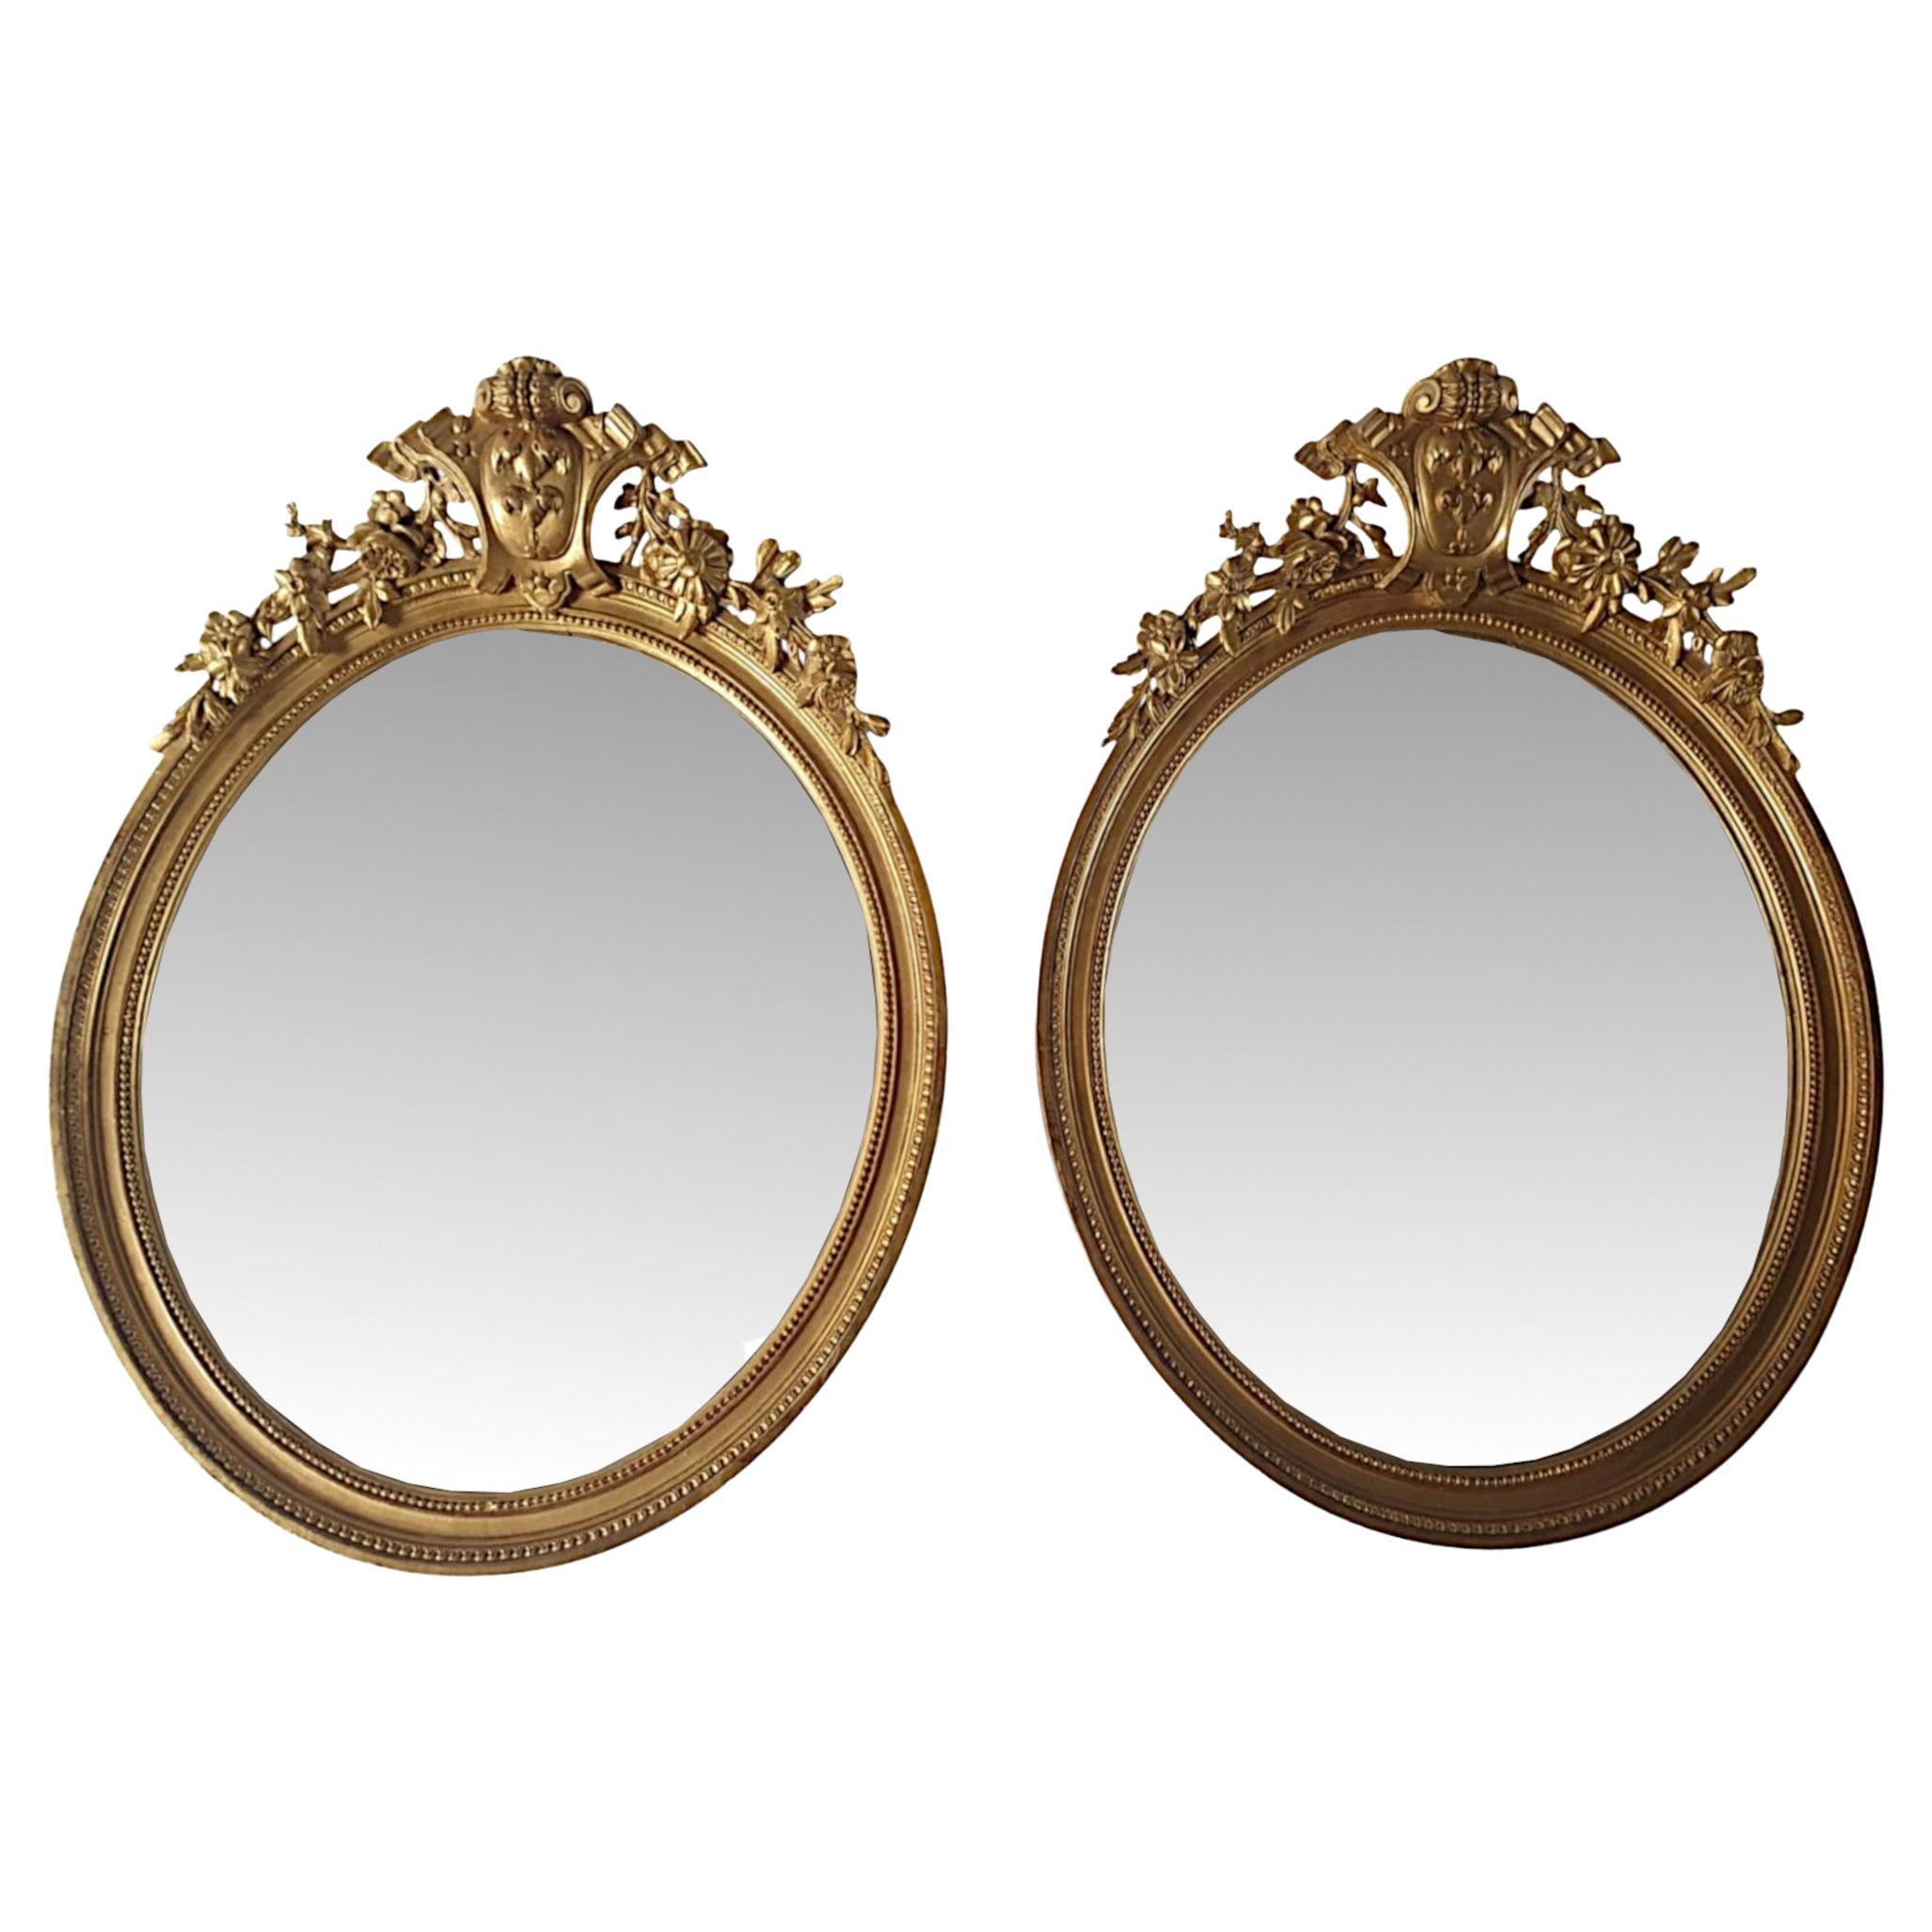 Très rare et belle paire de miroirs en bois doré du 19e siècle